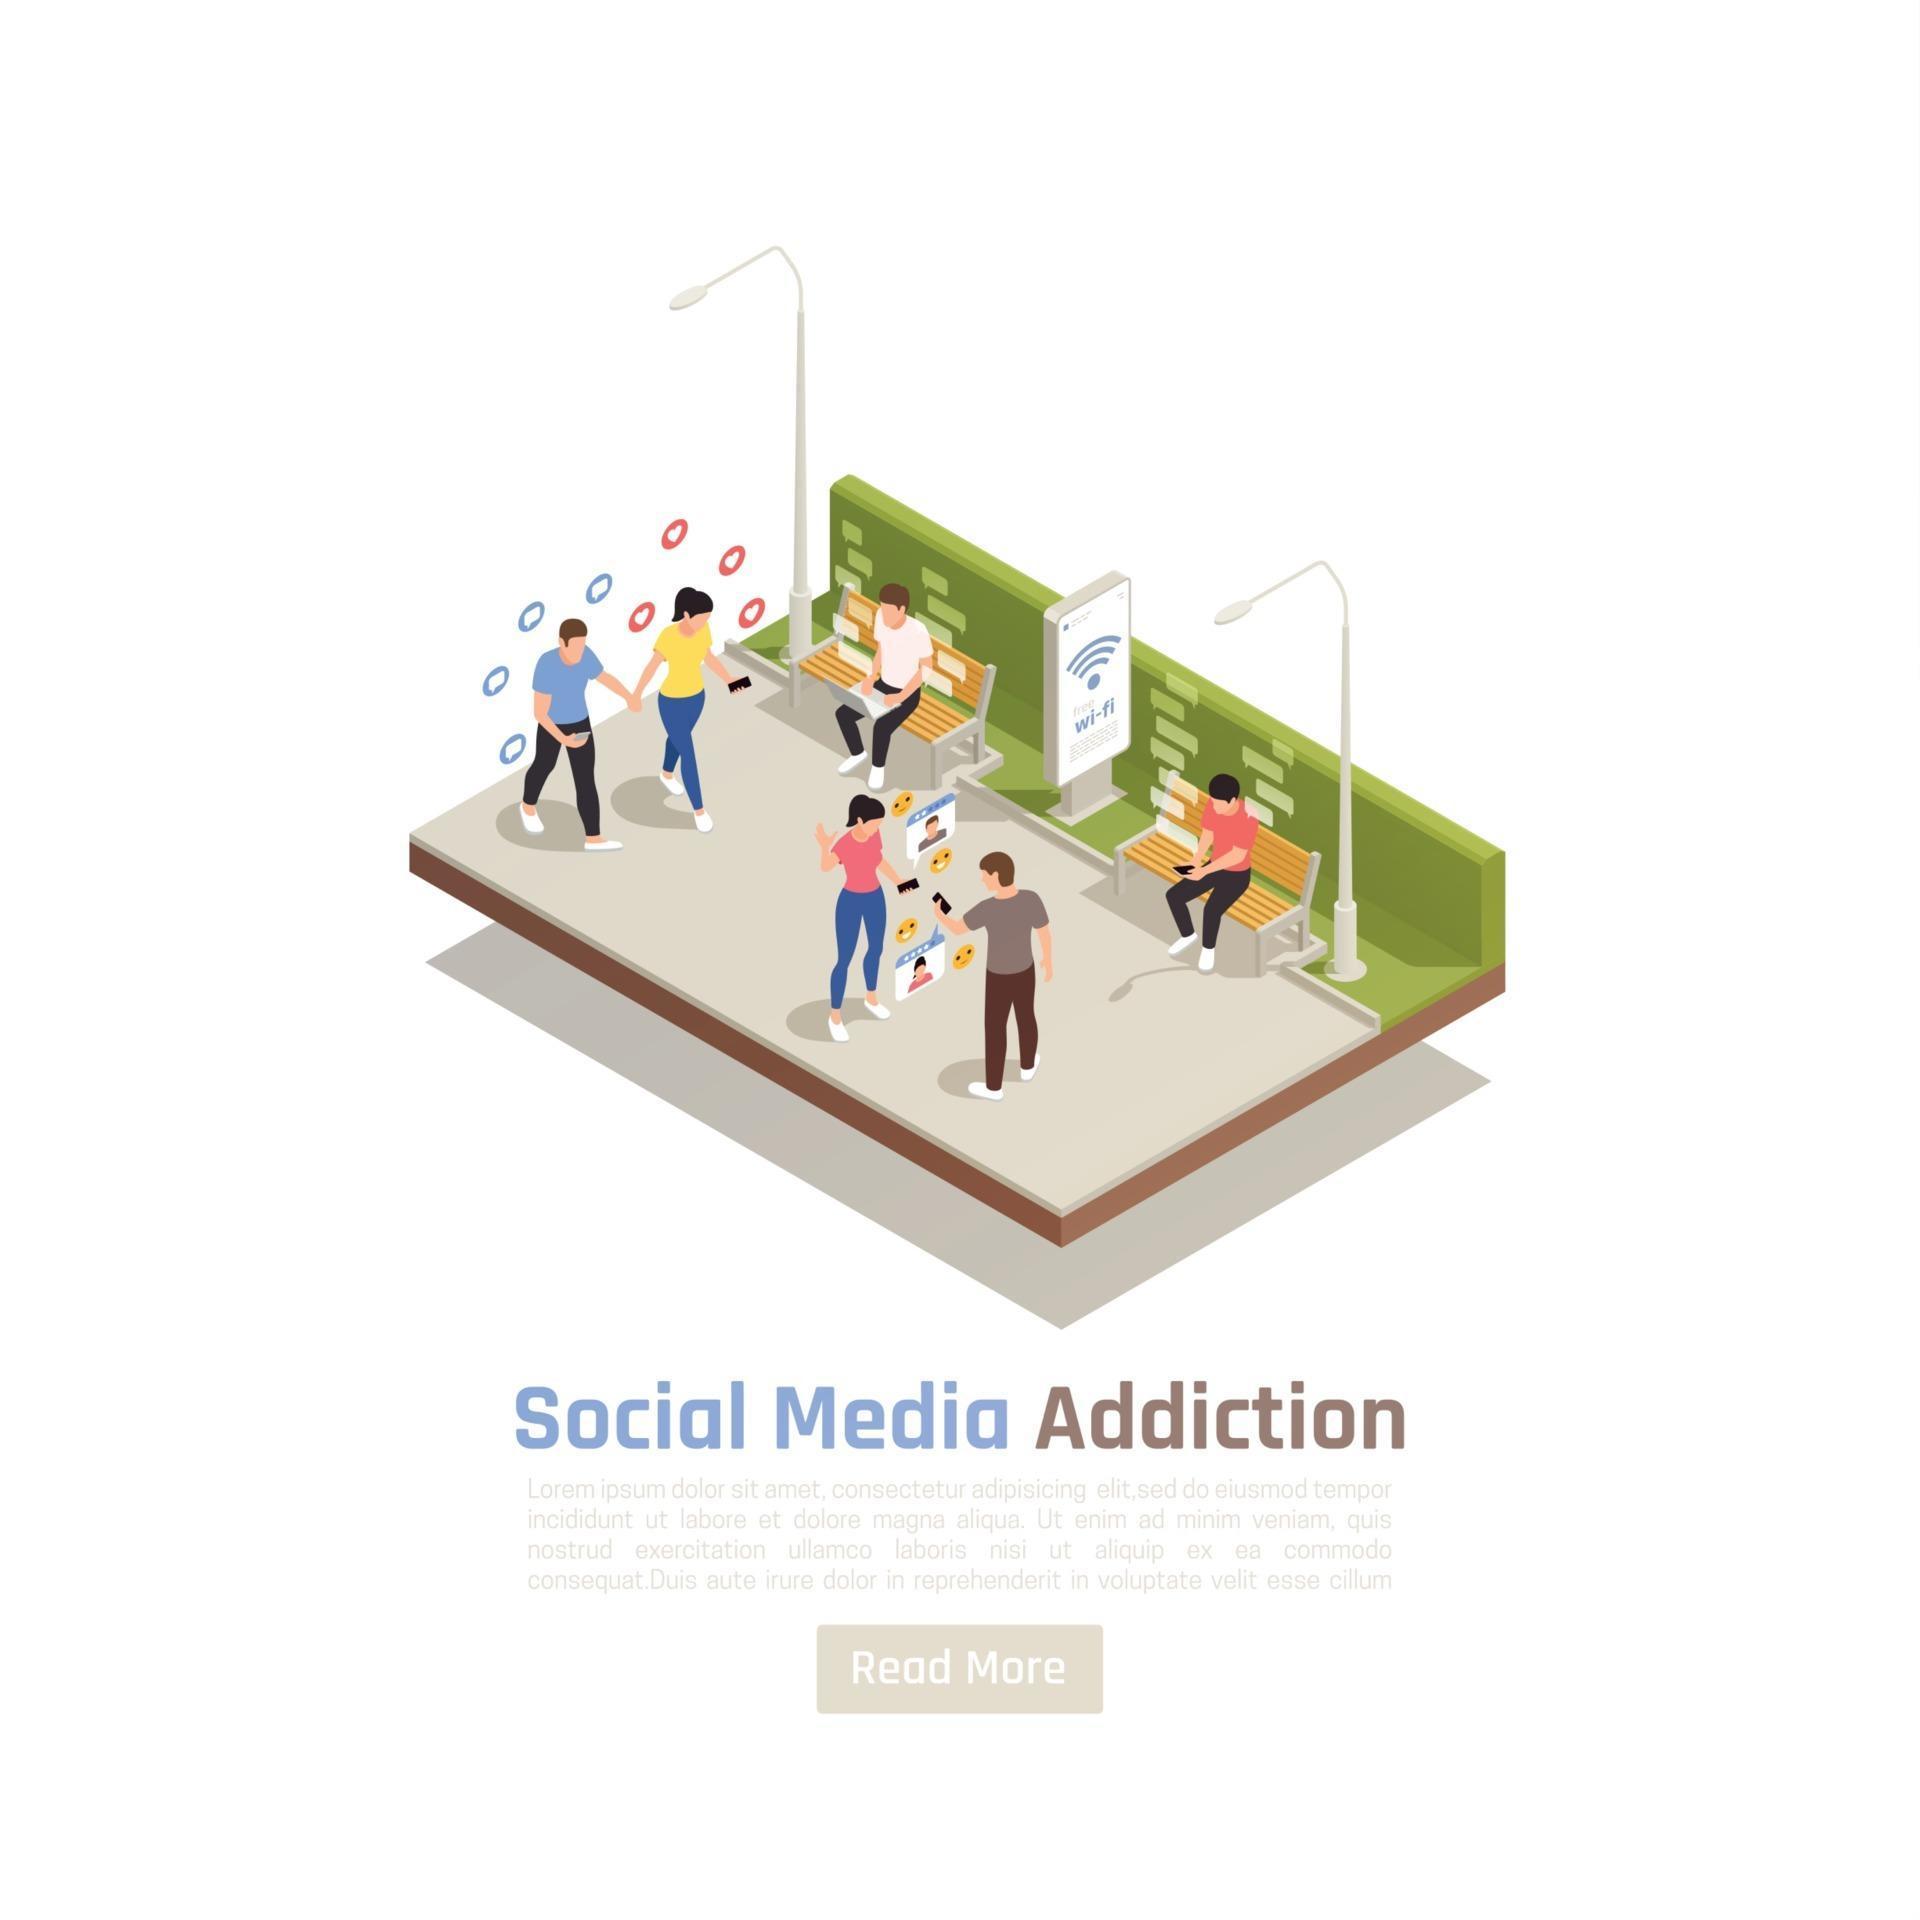 Social Media Addiction Background Vector Illustration 2950892 Vector